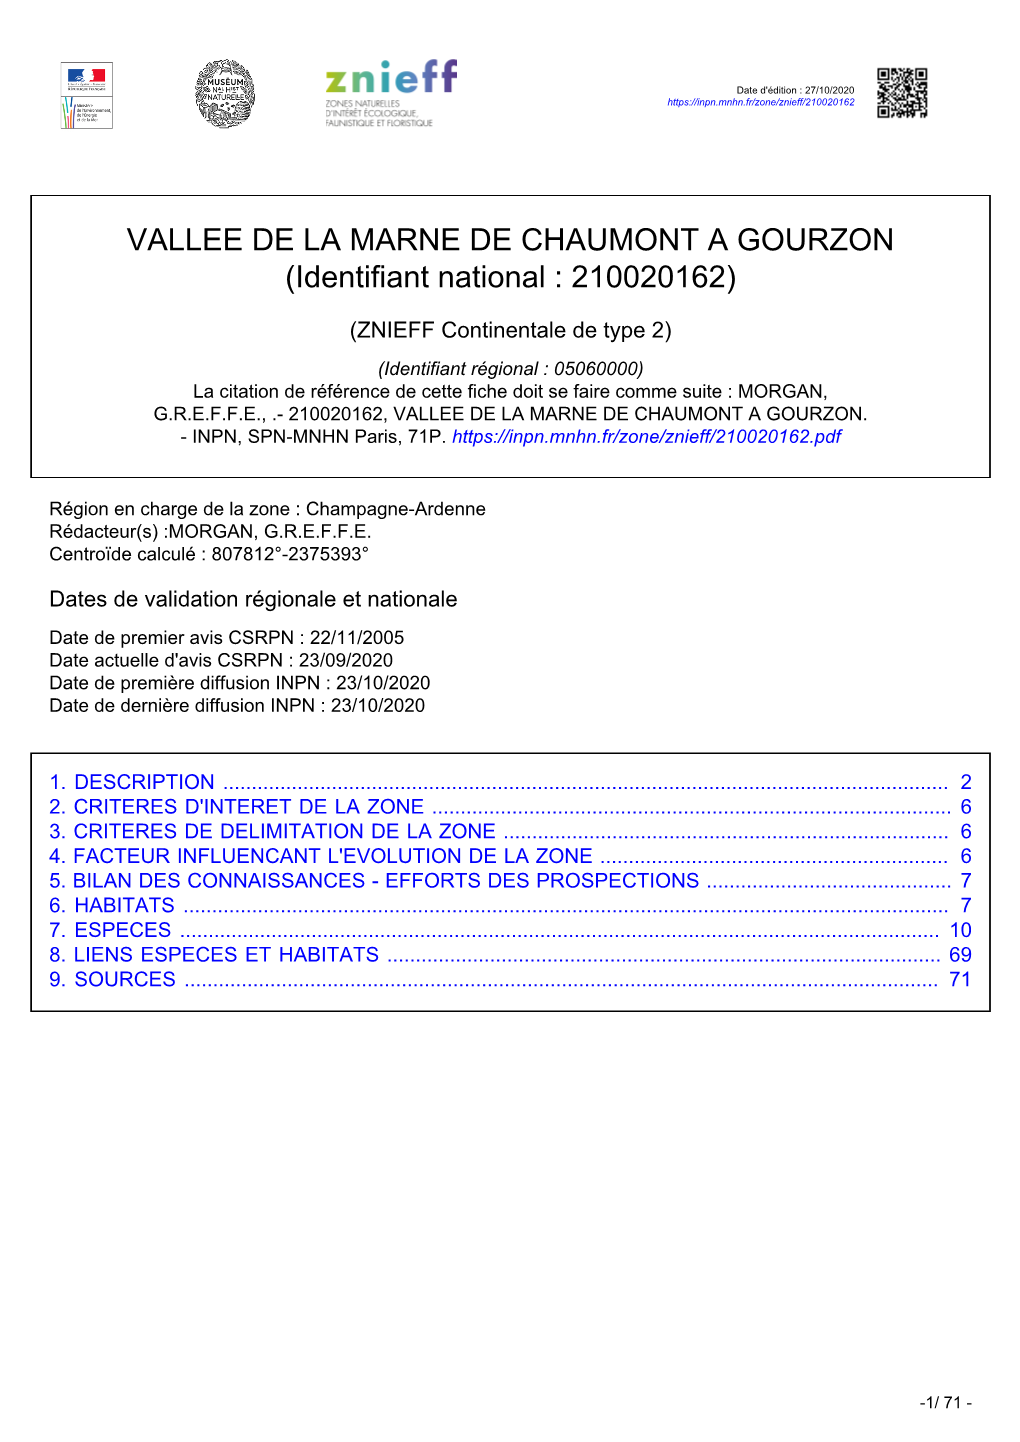 VALLEE DE LA MARNE DE CHAUMONT a GOURZON (Identifiant National : 210020162)